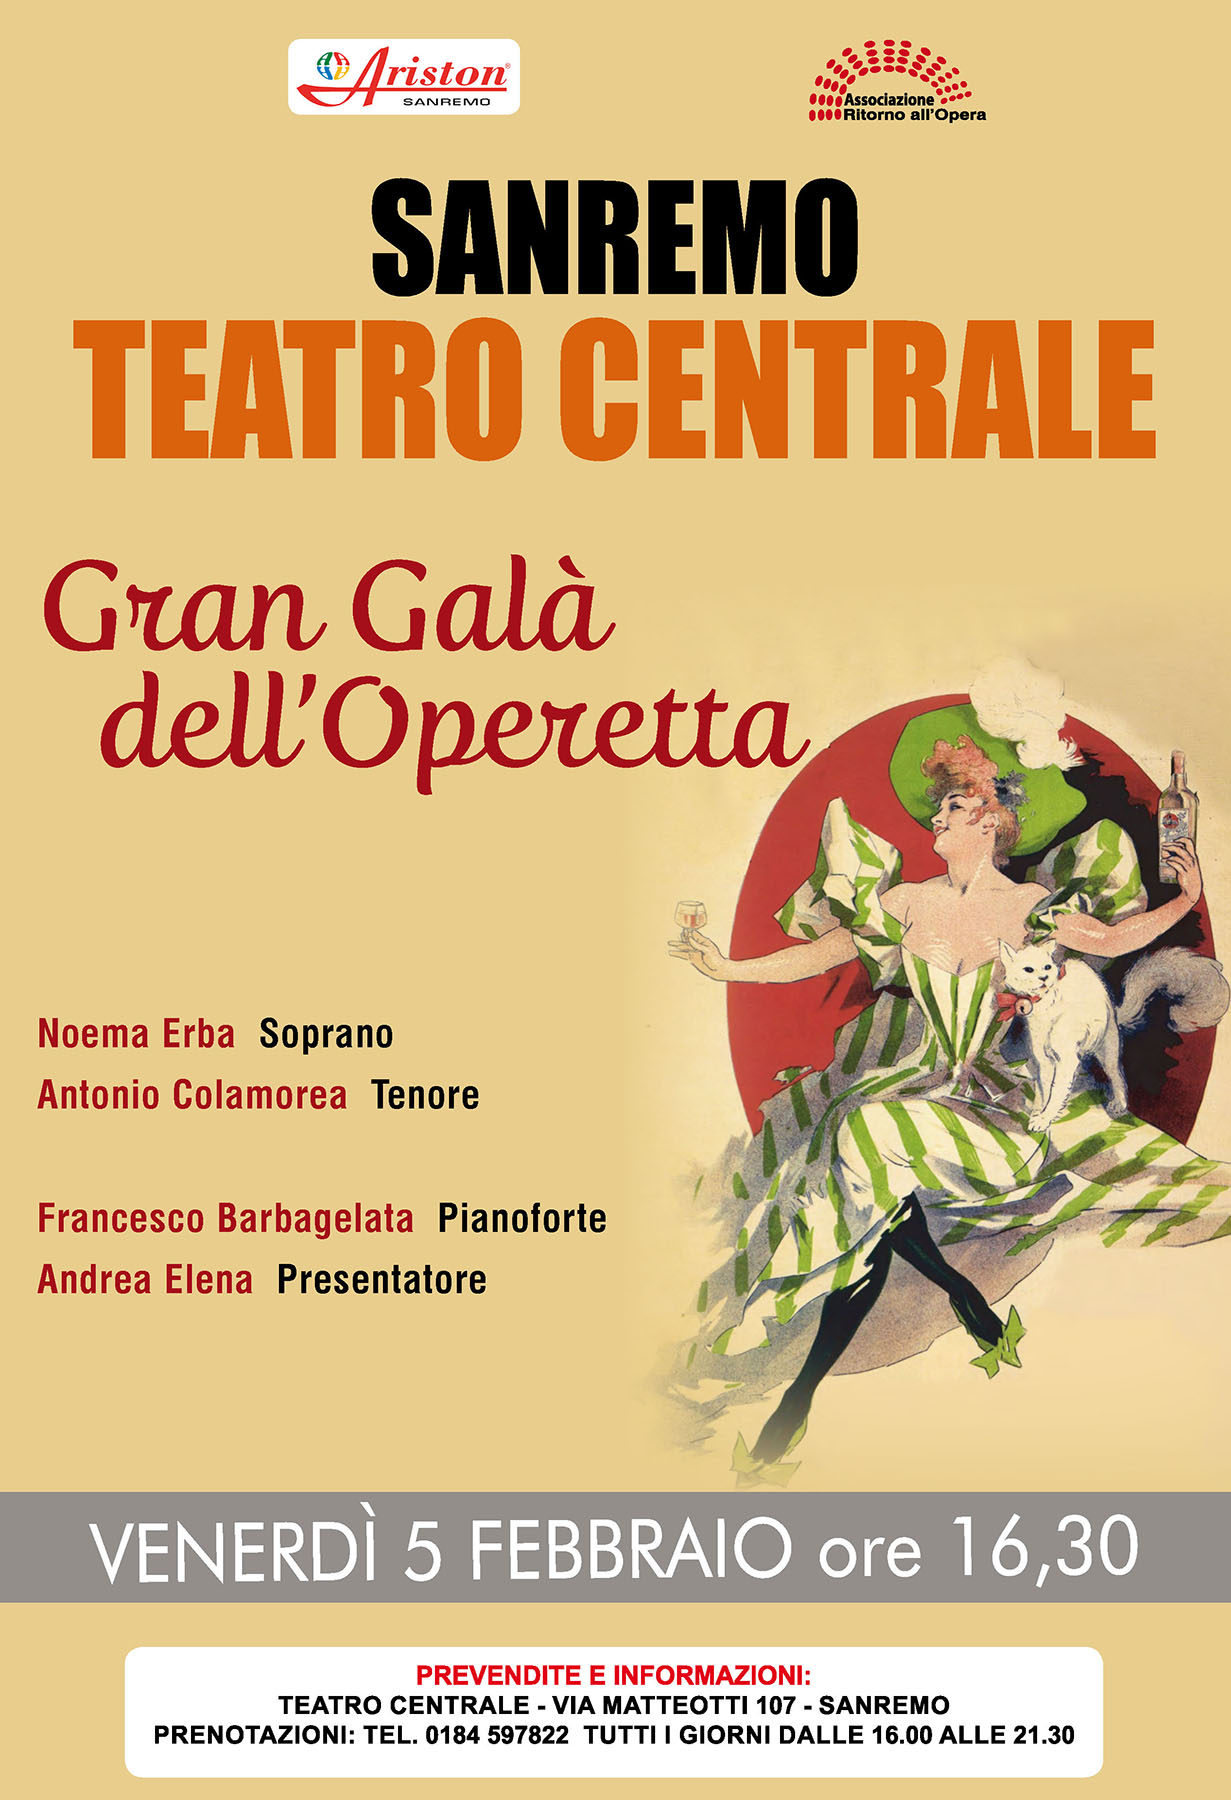 Noema Erba in Gran Gala Dell'Opera - San Remo, Italy 2016-1 - 1800